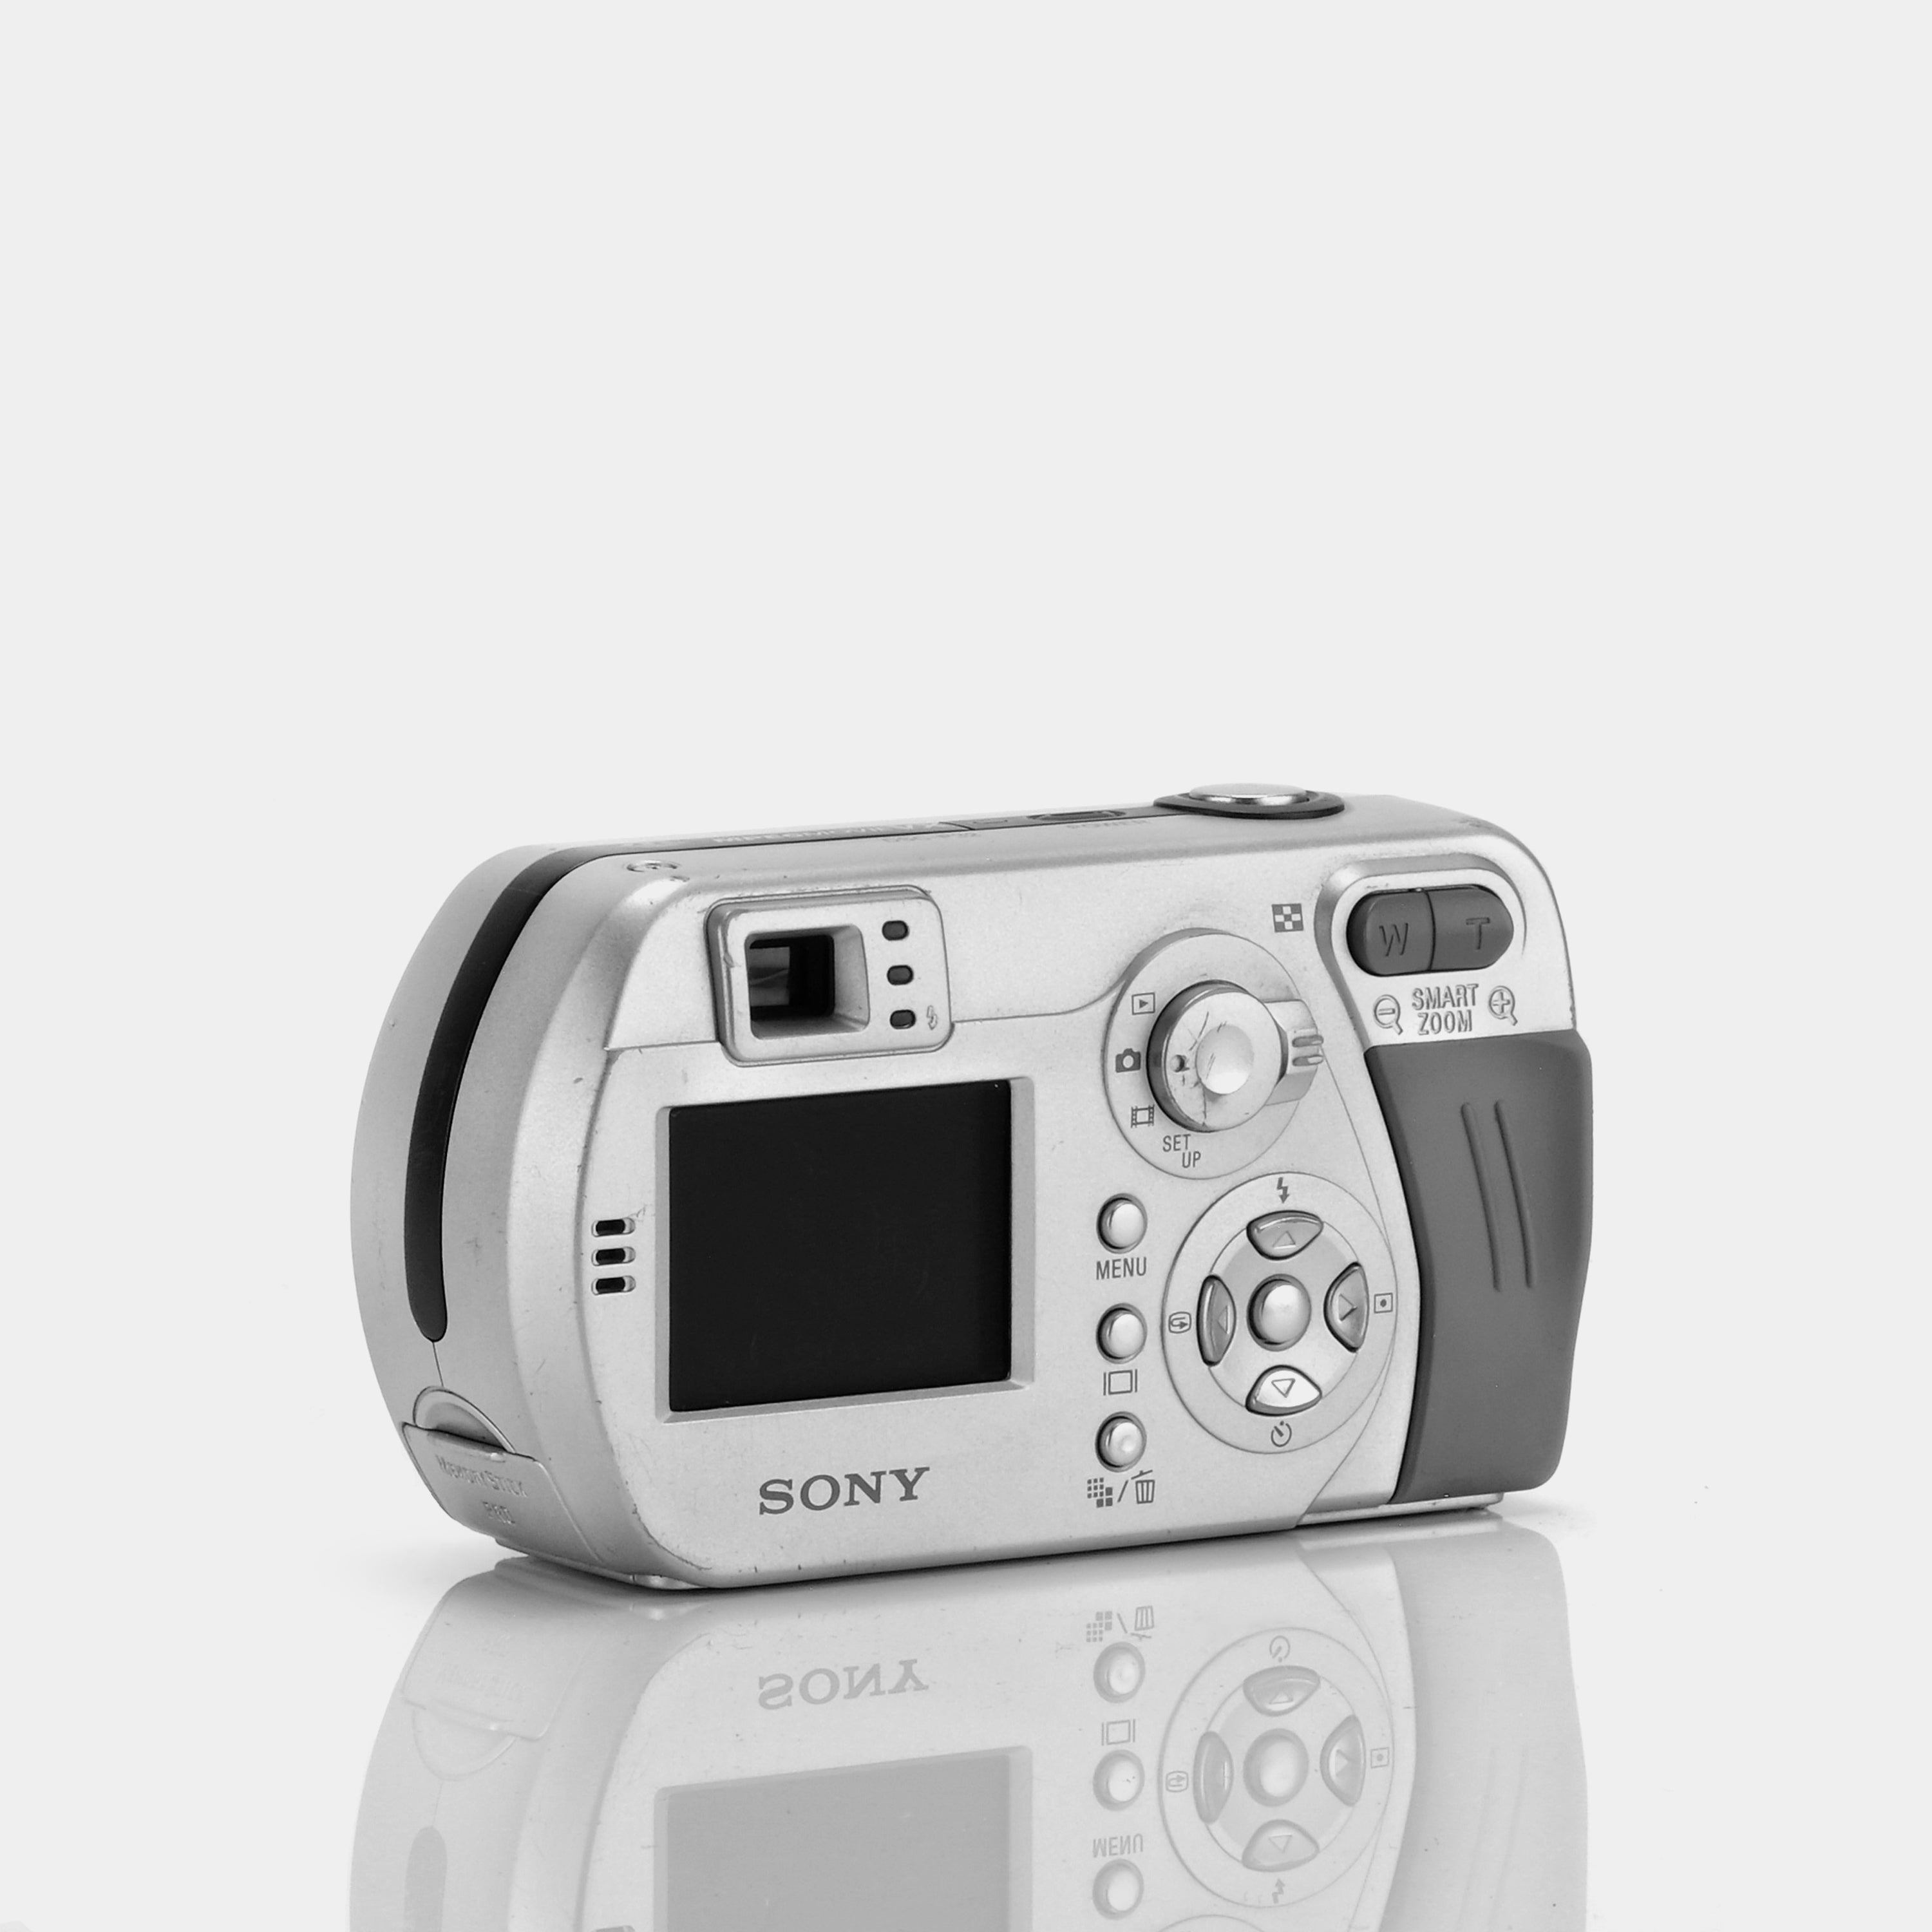 Sony Cyber-Shot DSC-P32 Digital Still Camera